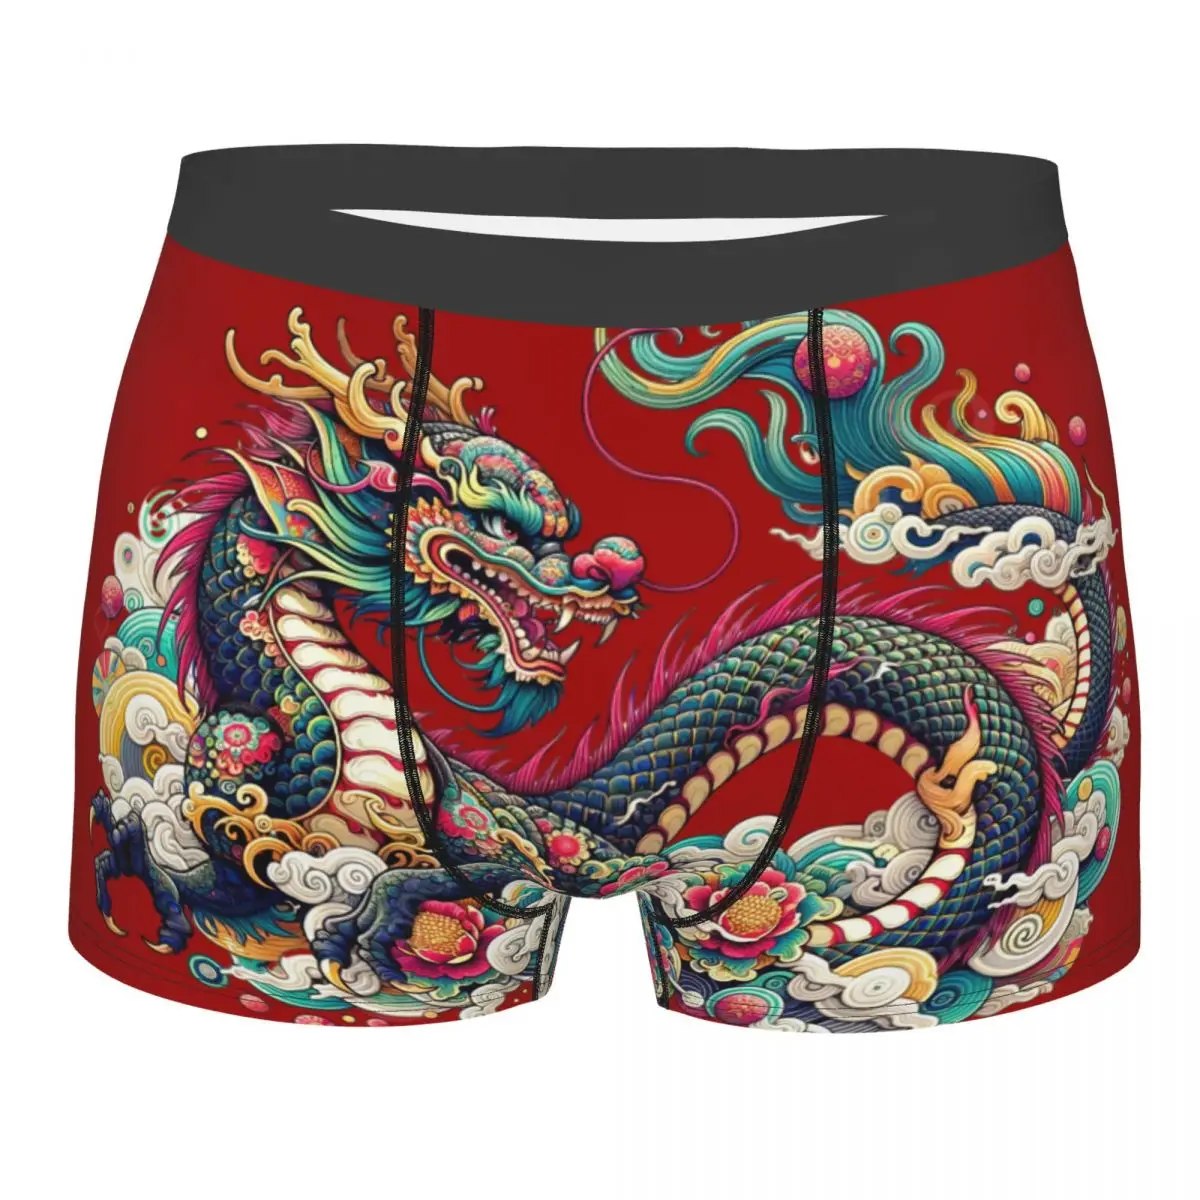 Мужское нижнее белье с китайским драконом, дышащее, отличное качество, идея для подарка металлическое музыкальное мужское нижнее белье очень дышащее высшее качество подарки на день рождения